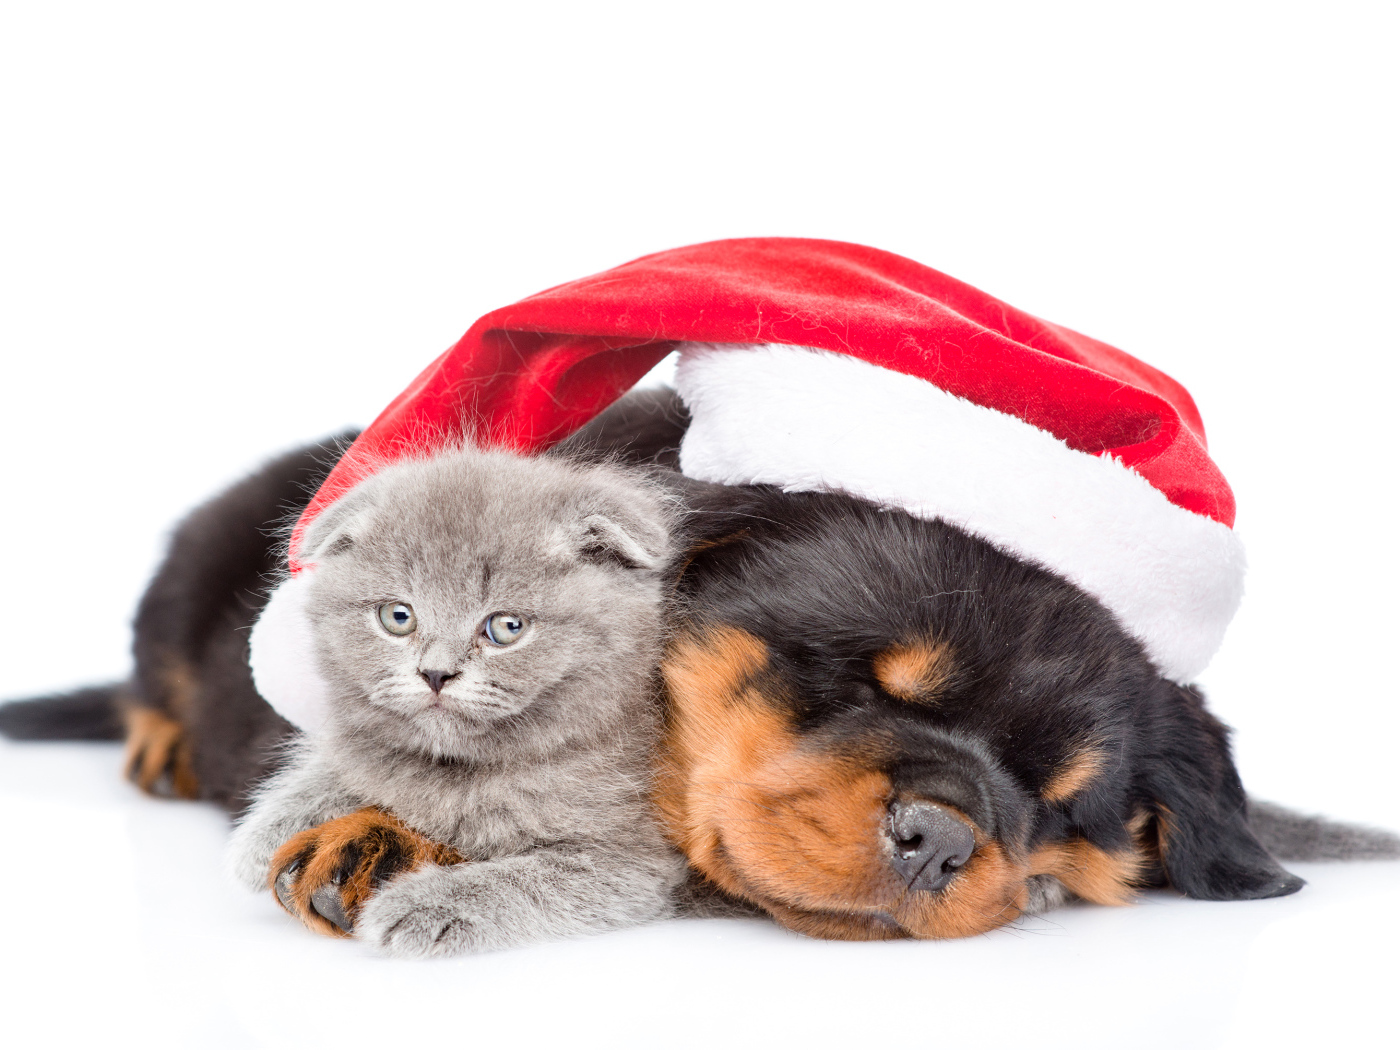 Спящий щенок ротвейлера в красной шапке Санта Клауса с серым котенком на белом фоне